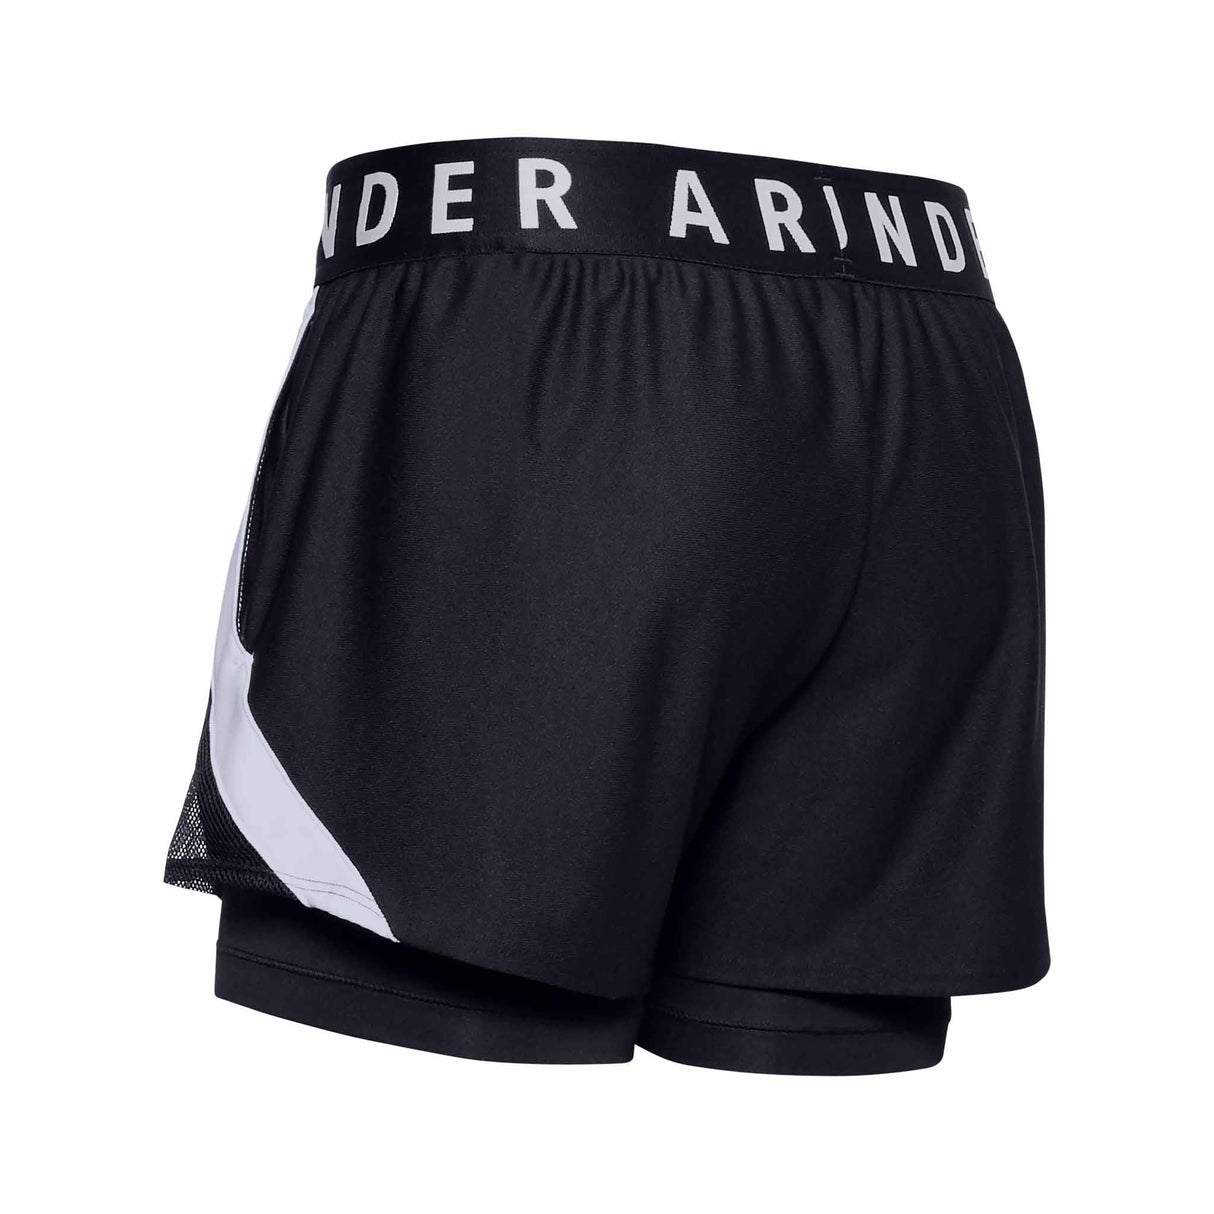 Under Armour Play Up 2-en-1 shorts pour femme - Black / White